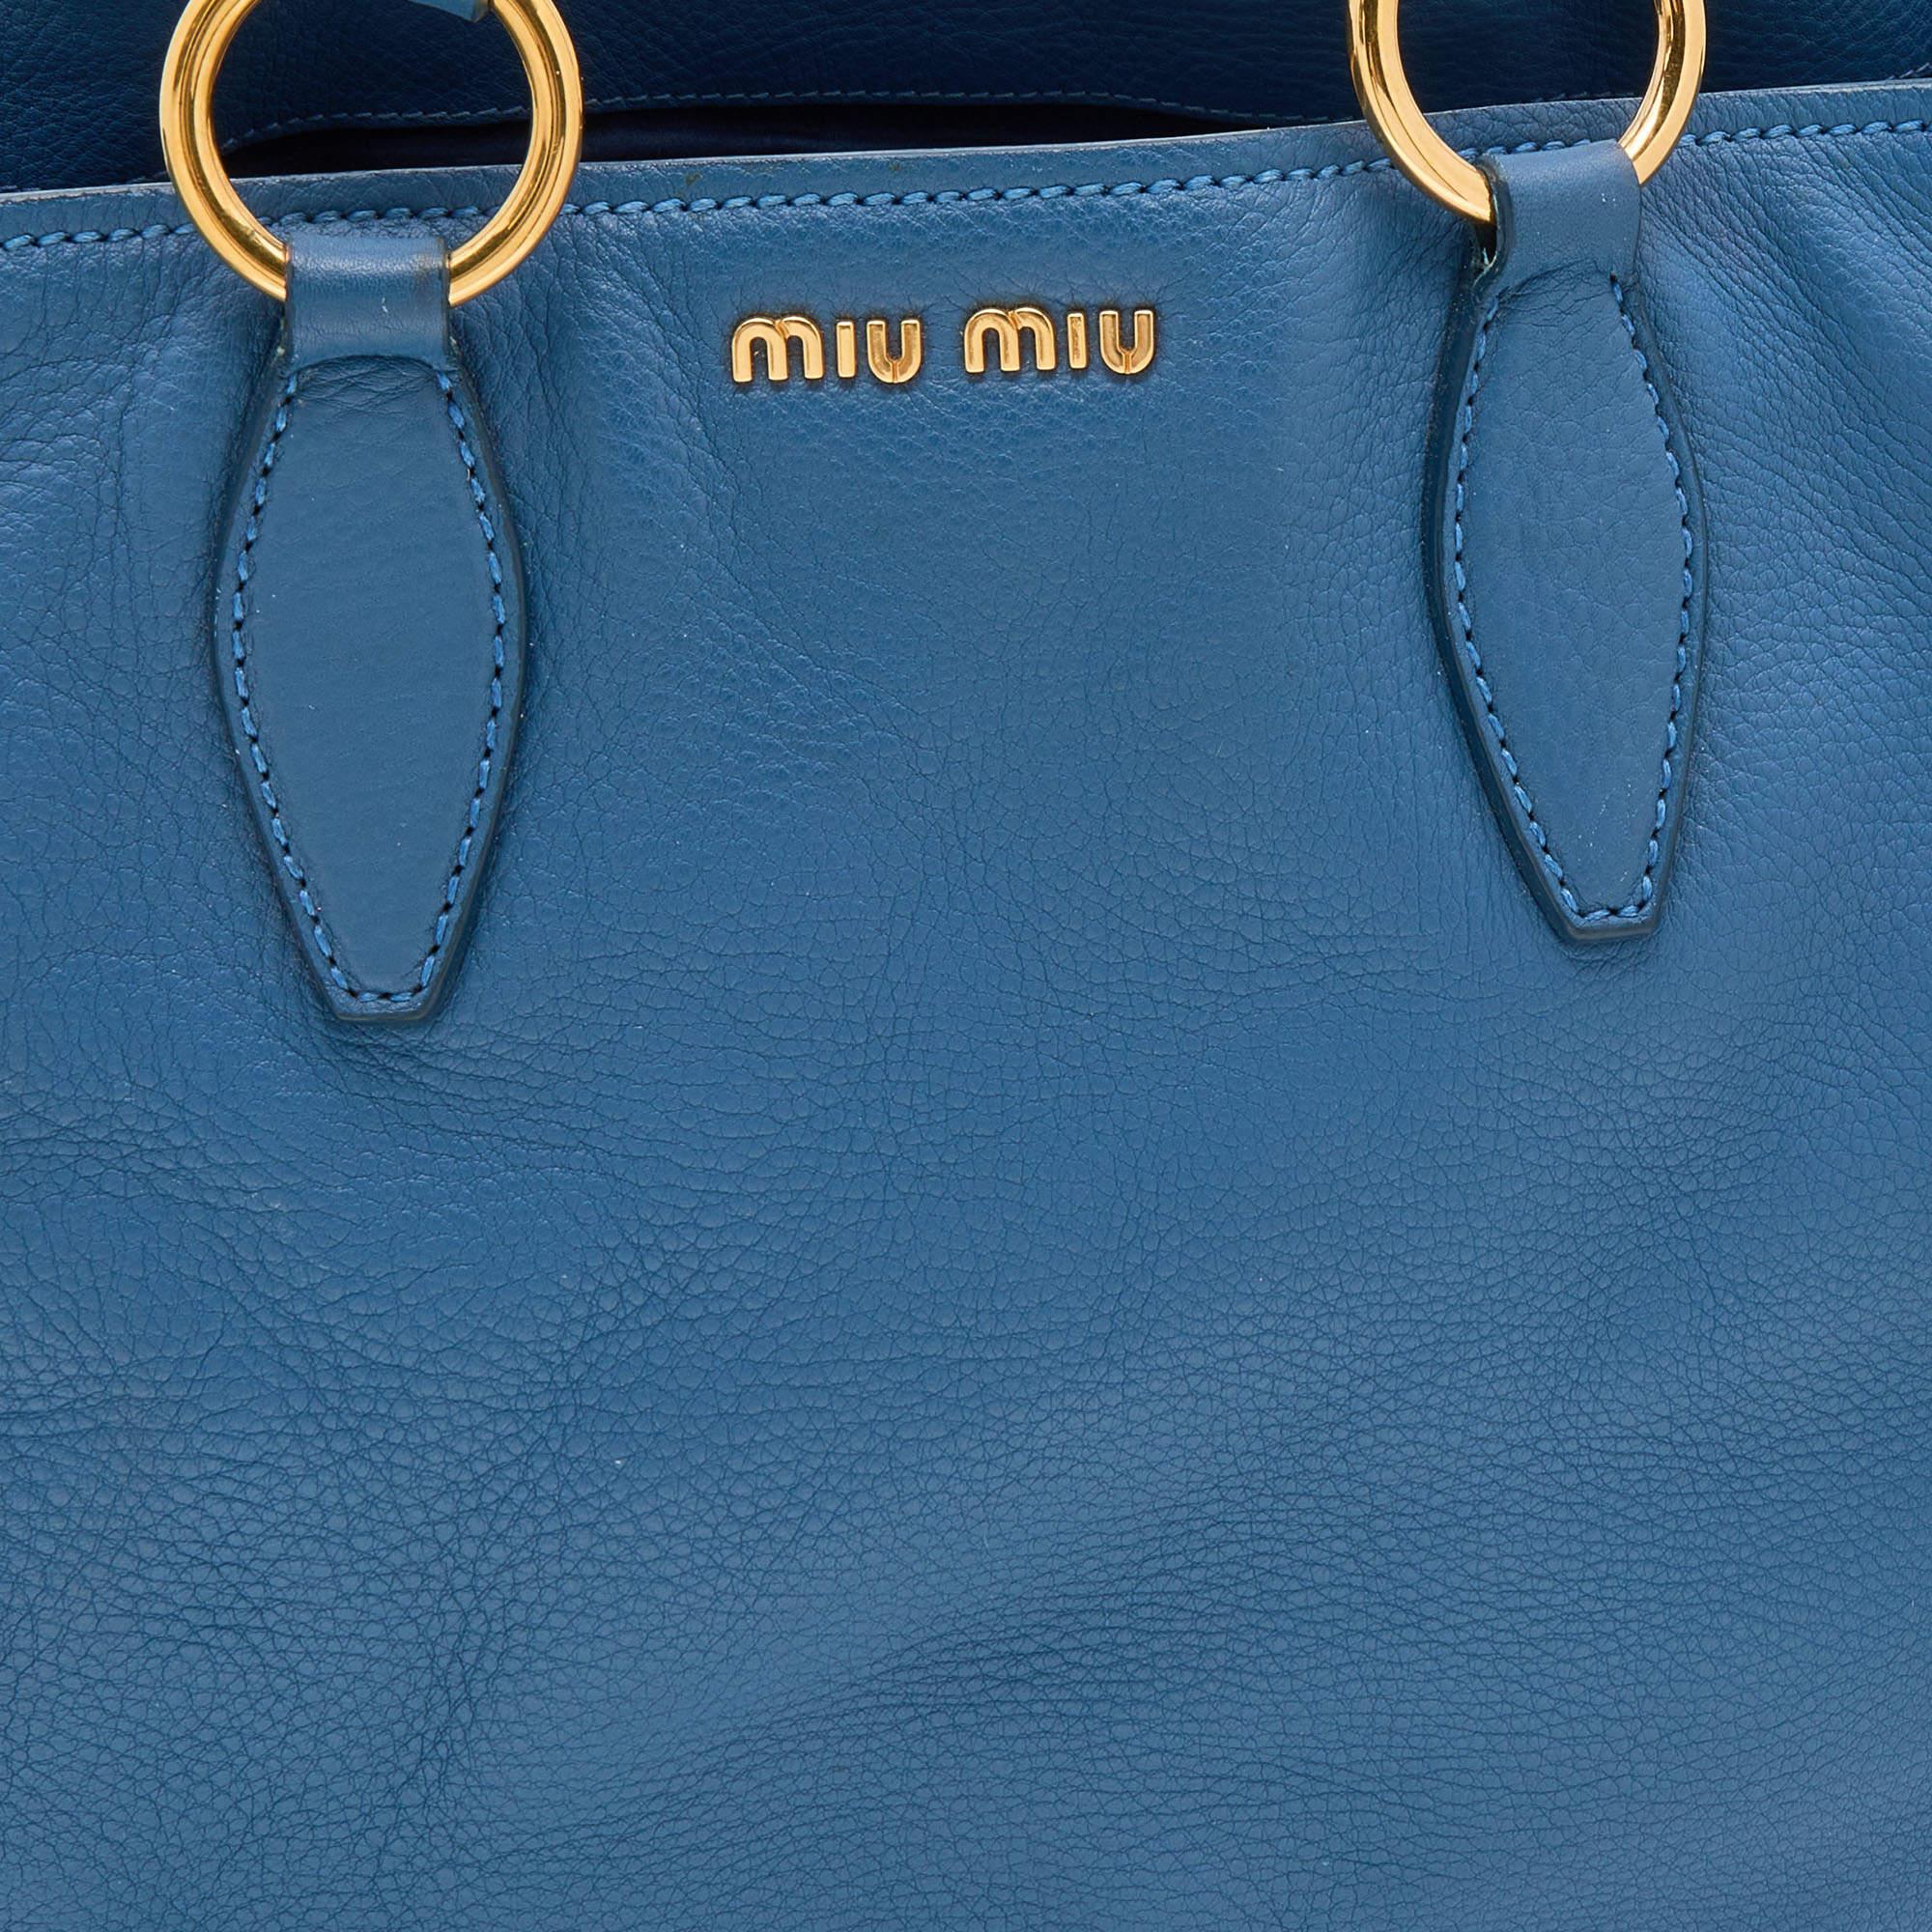 Miu Miu Blue Leather Middle Zip Tote 4